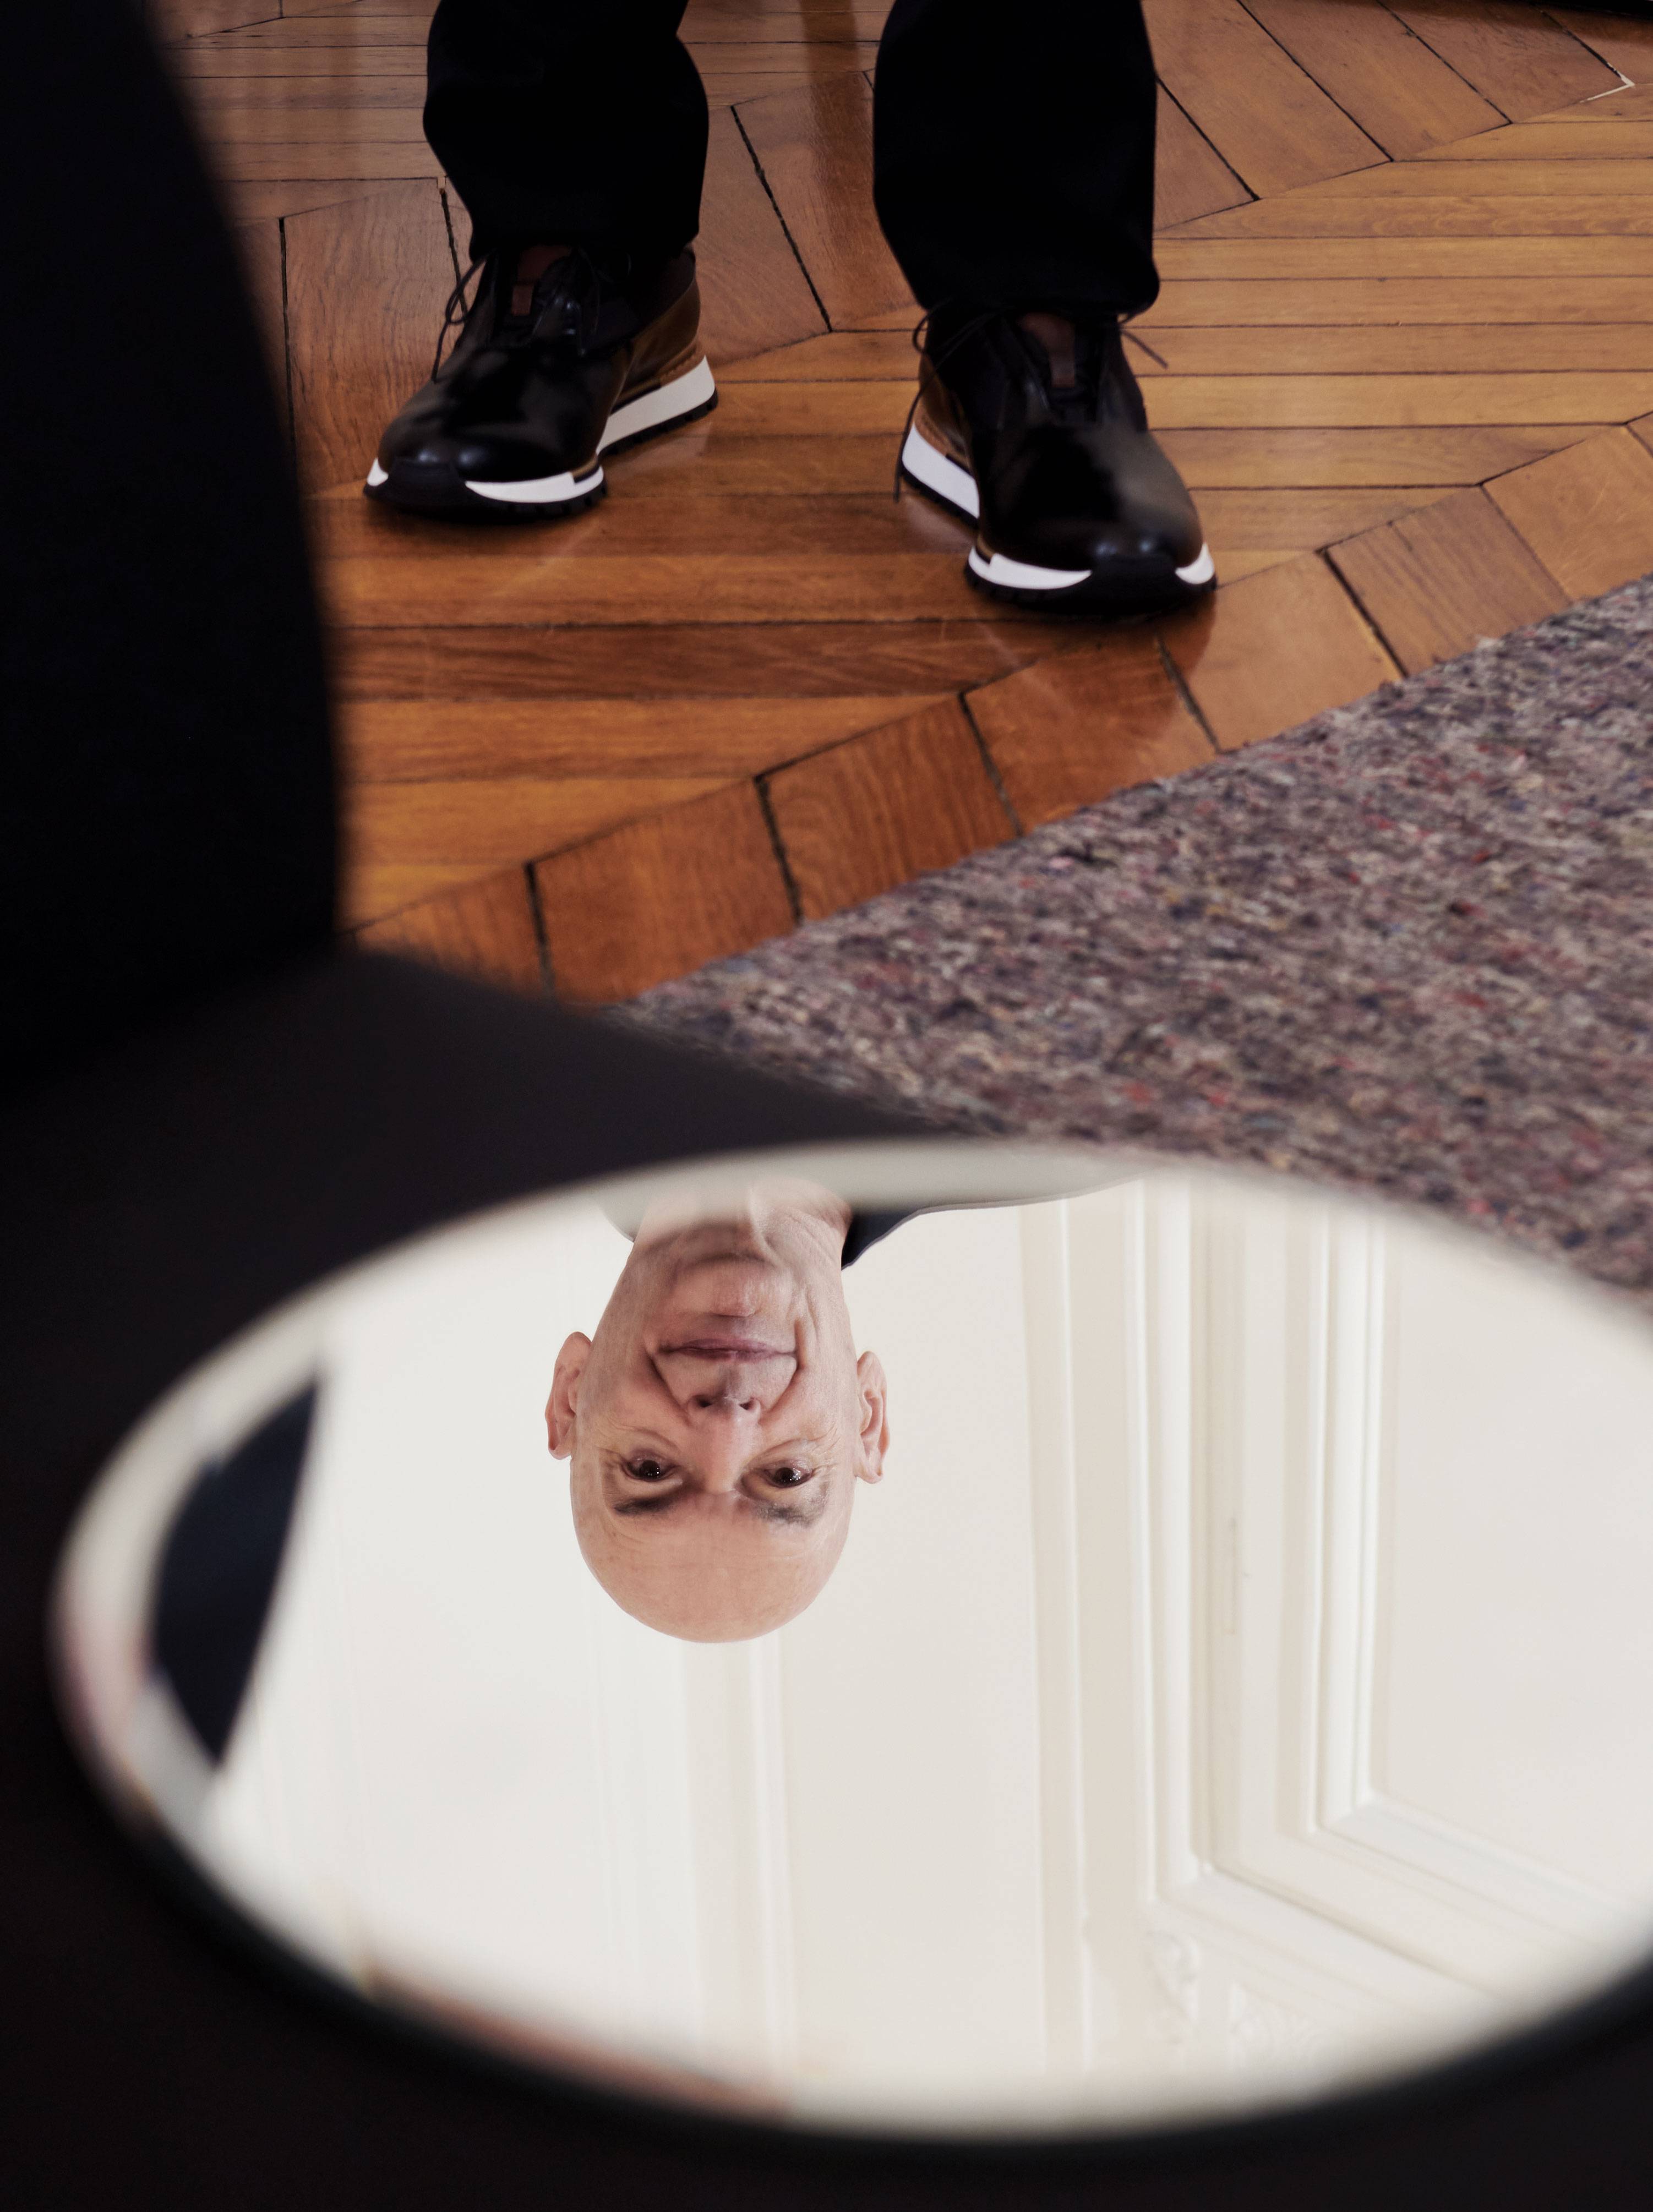 Jean Nouvel, photographié le 18 juillet 2022 à son domicile parisien, rue Royale, Paris VIIIe. Pantalon en drap de laine et sneakers, Berluti.
Retouche : Pardon my French